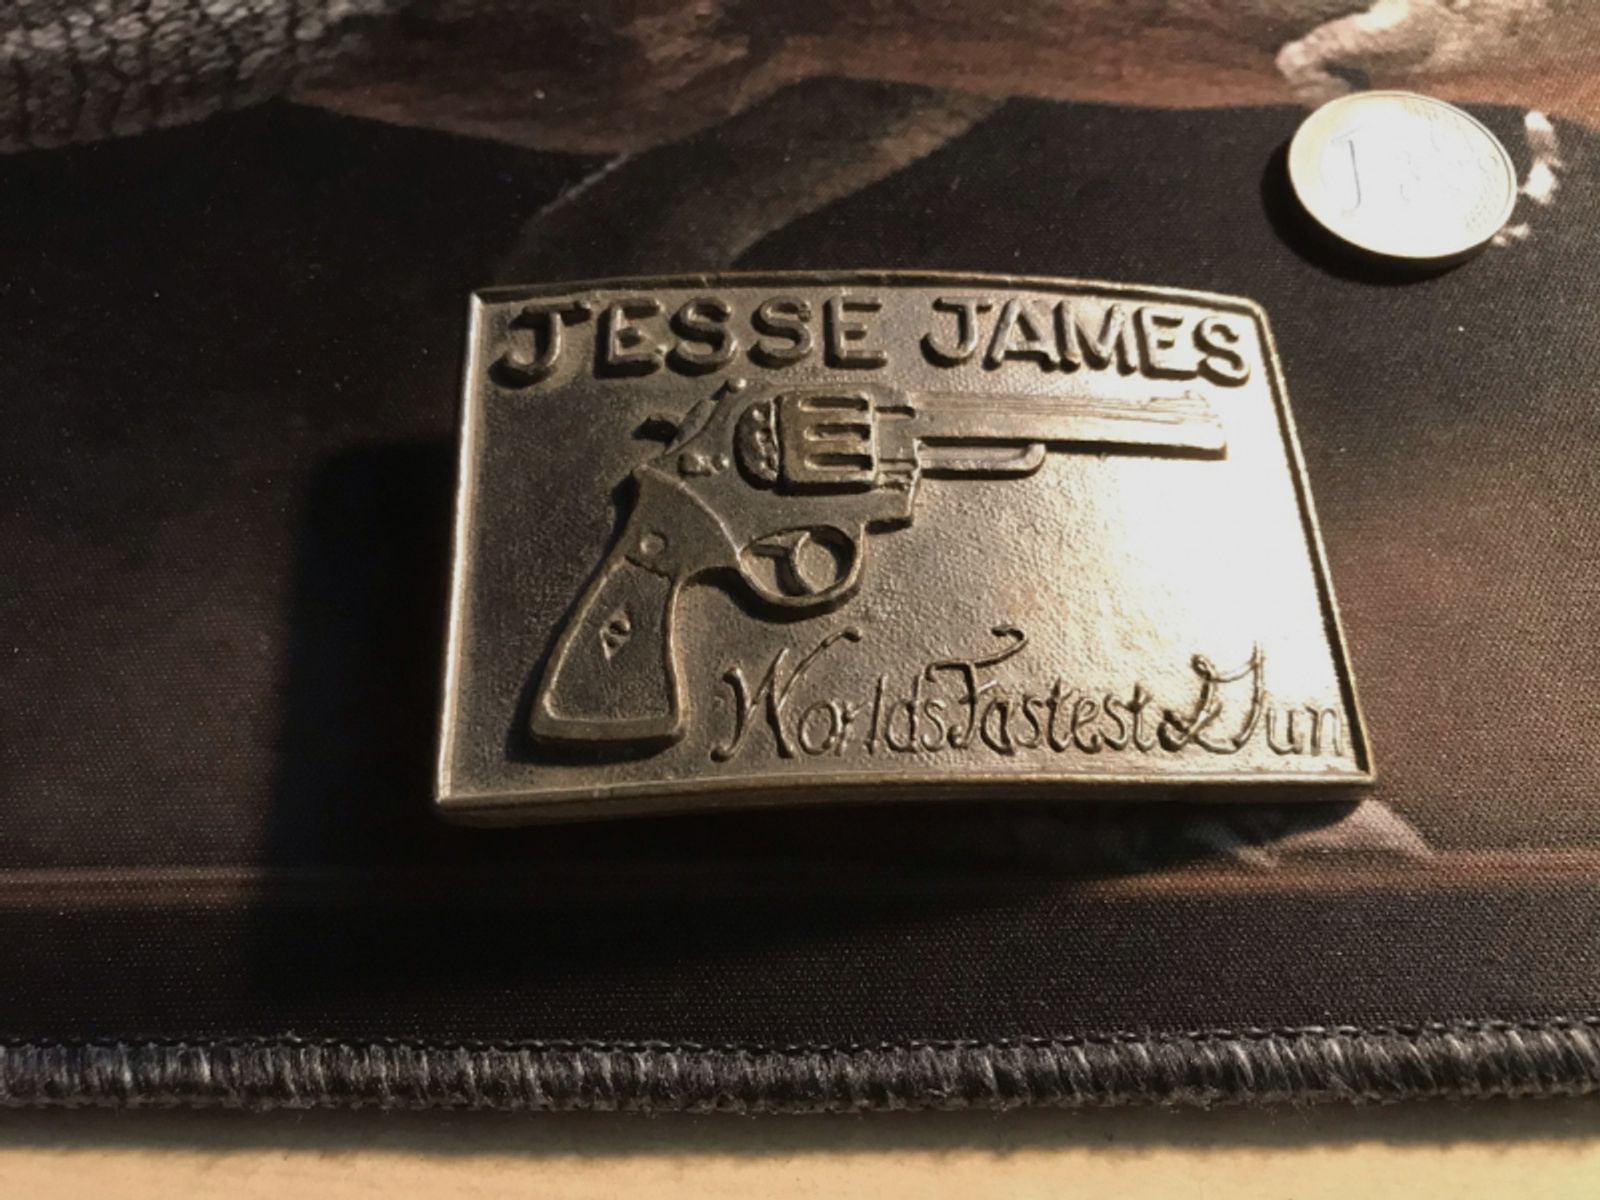 USA Gürtelschnalle , Belt Buckle, Jesse James, Worlds Fastest Gun